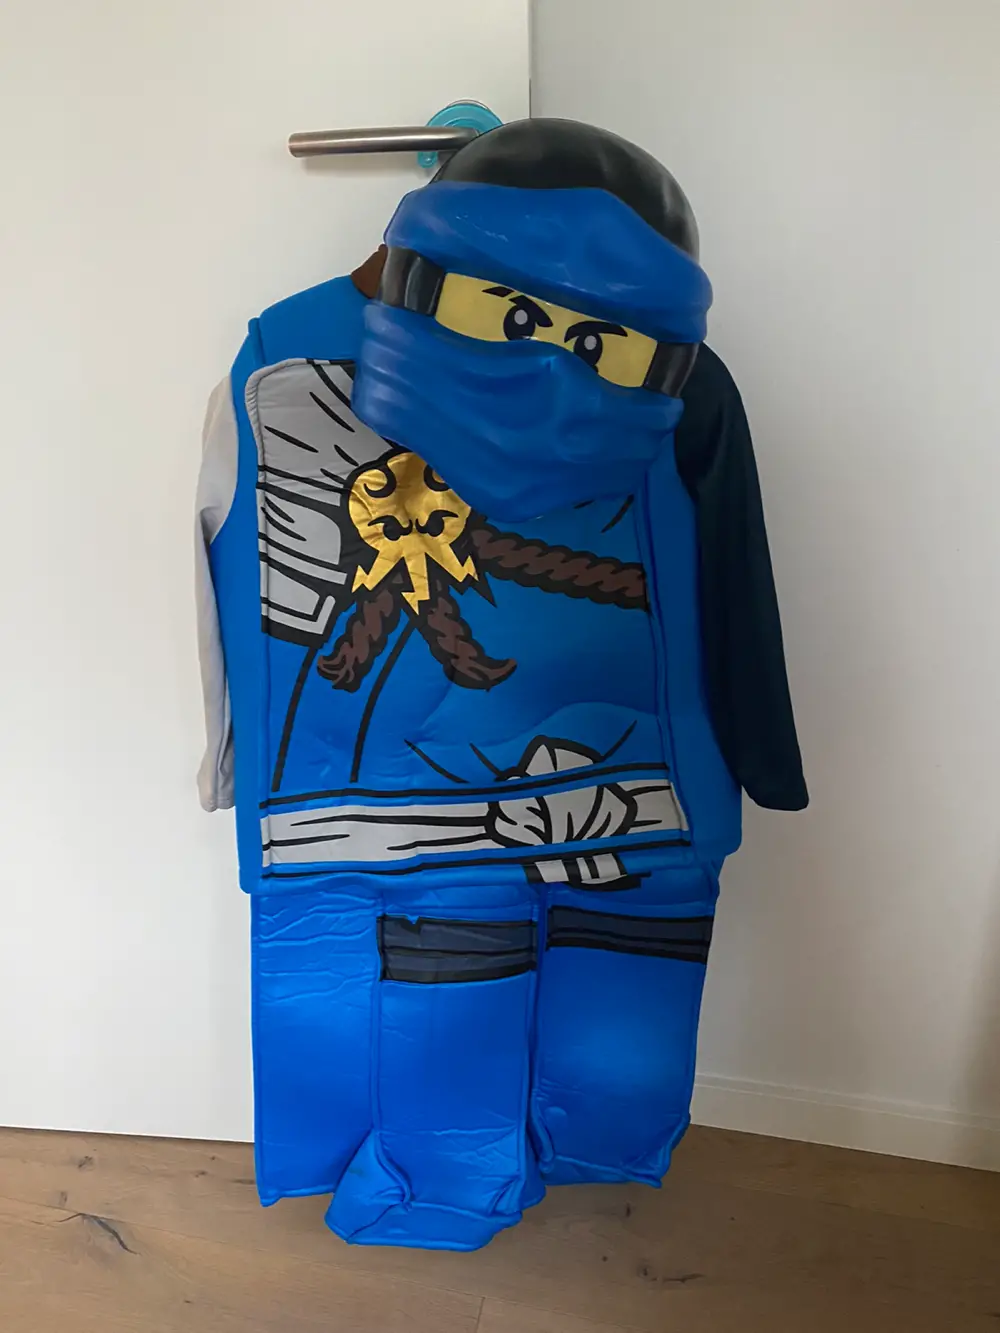 Køb Lego - Kostume af Sabrina på Reshopper · Shop til børn, mor og bolig